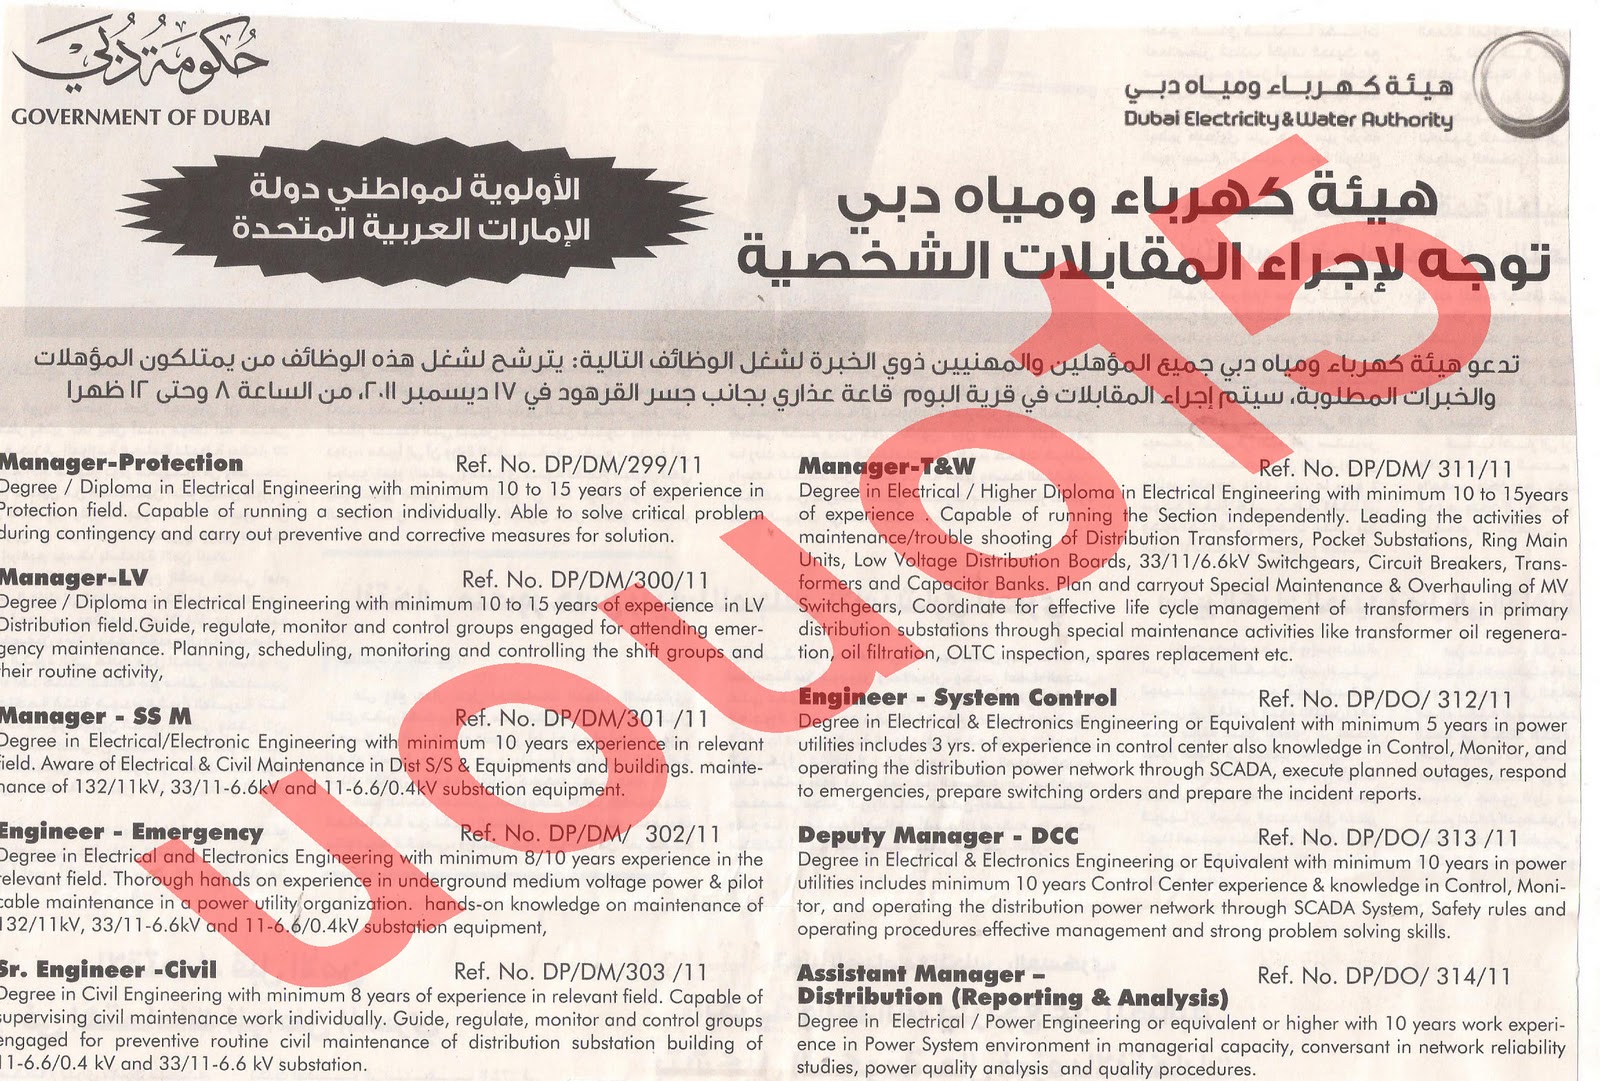  وظائف شاغرة من  جريدة الخليج الاربعاء 14\12\2011 , وظائف حكومية متميزة  Picture+006